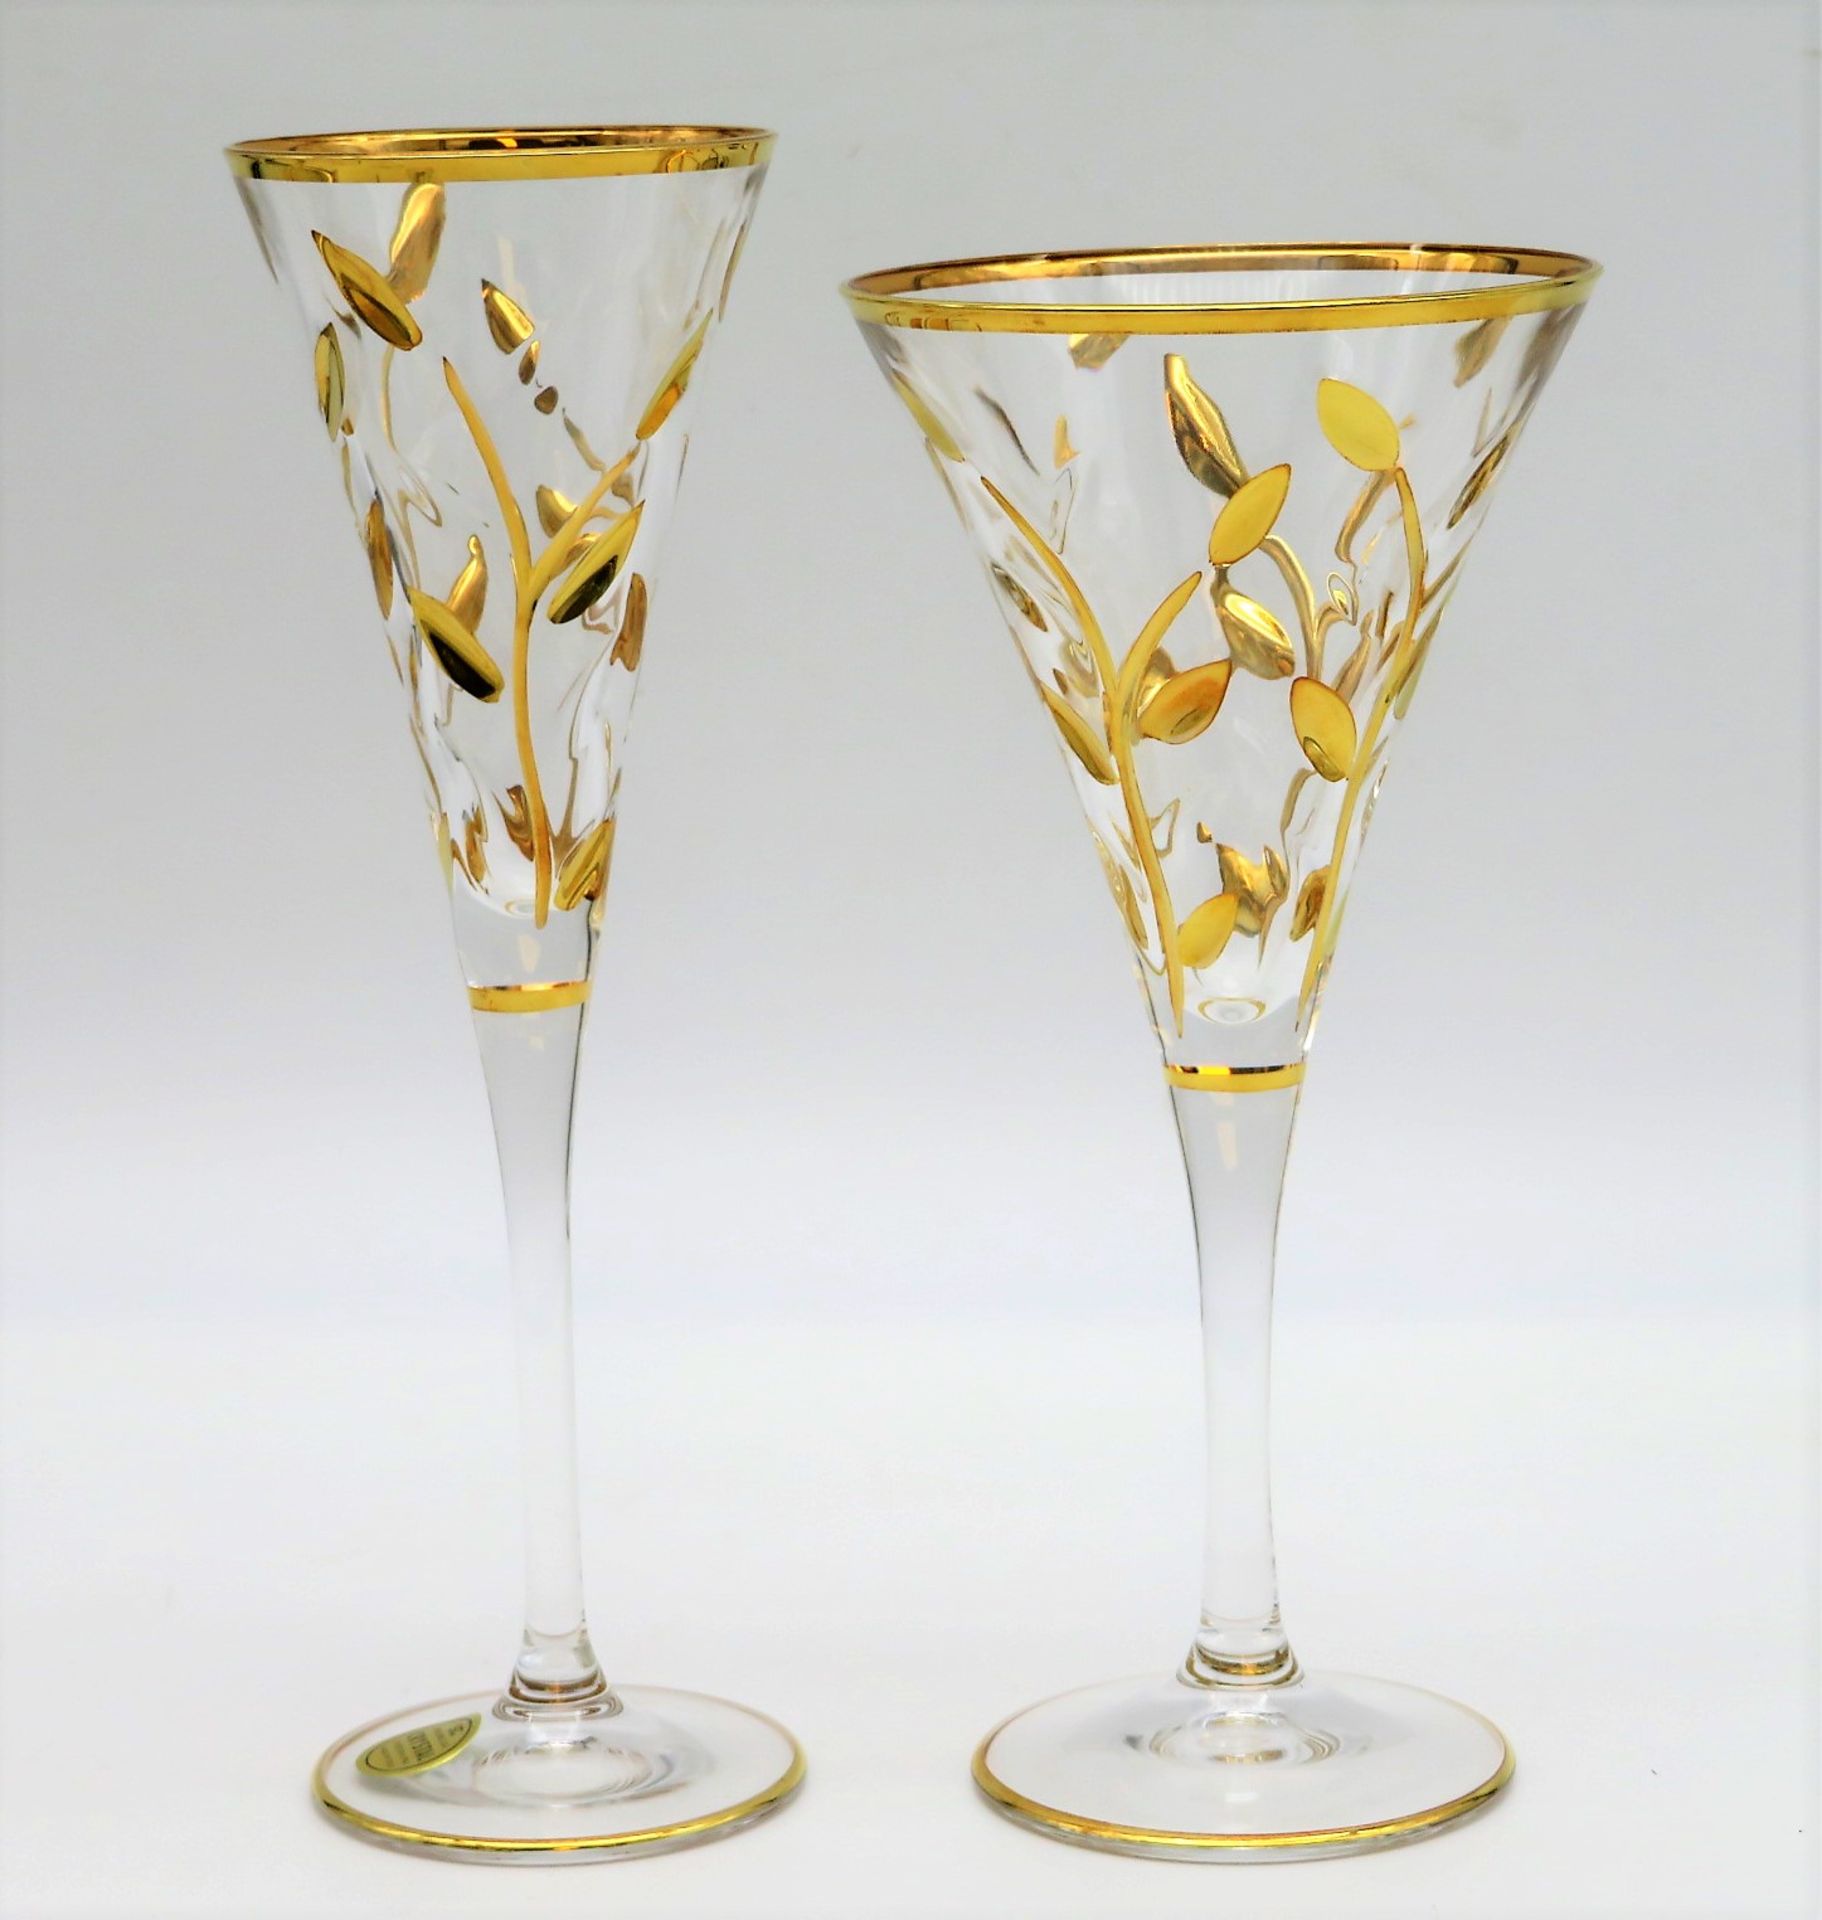 4 Sektgläser und 4 Sektkelche, Italien, farbloses Kristallglas mit reliefiertem Dekor von Blattwerk